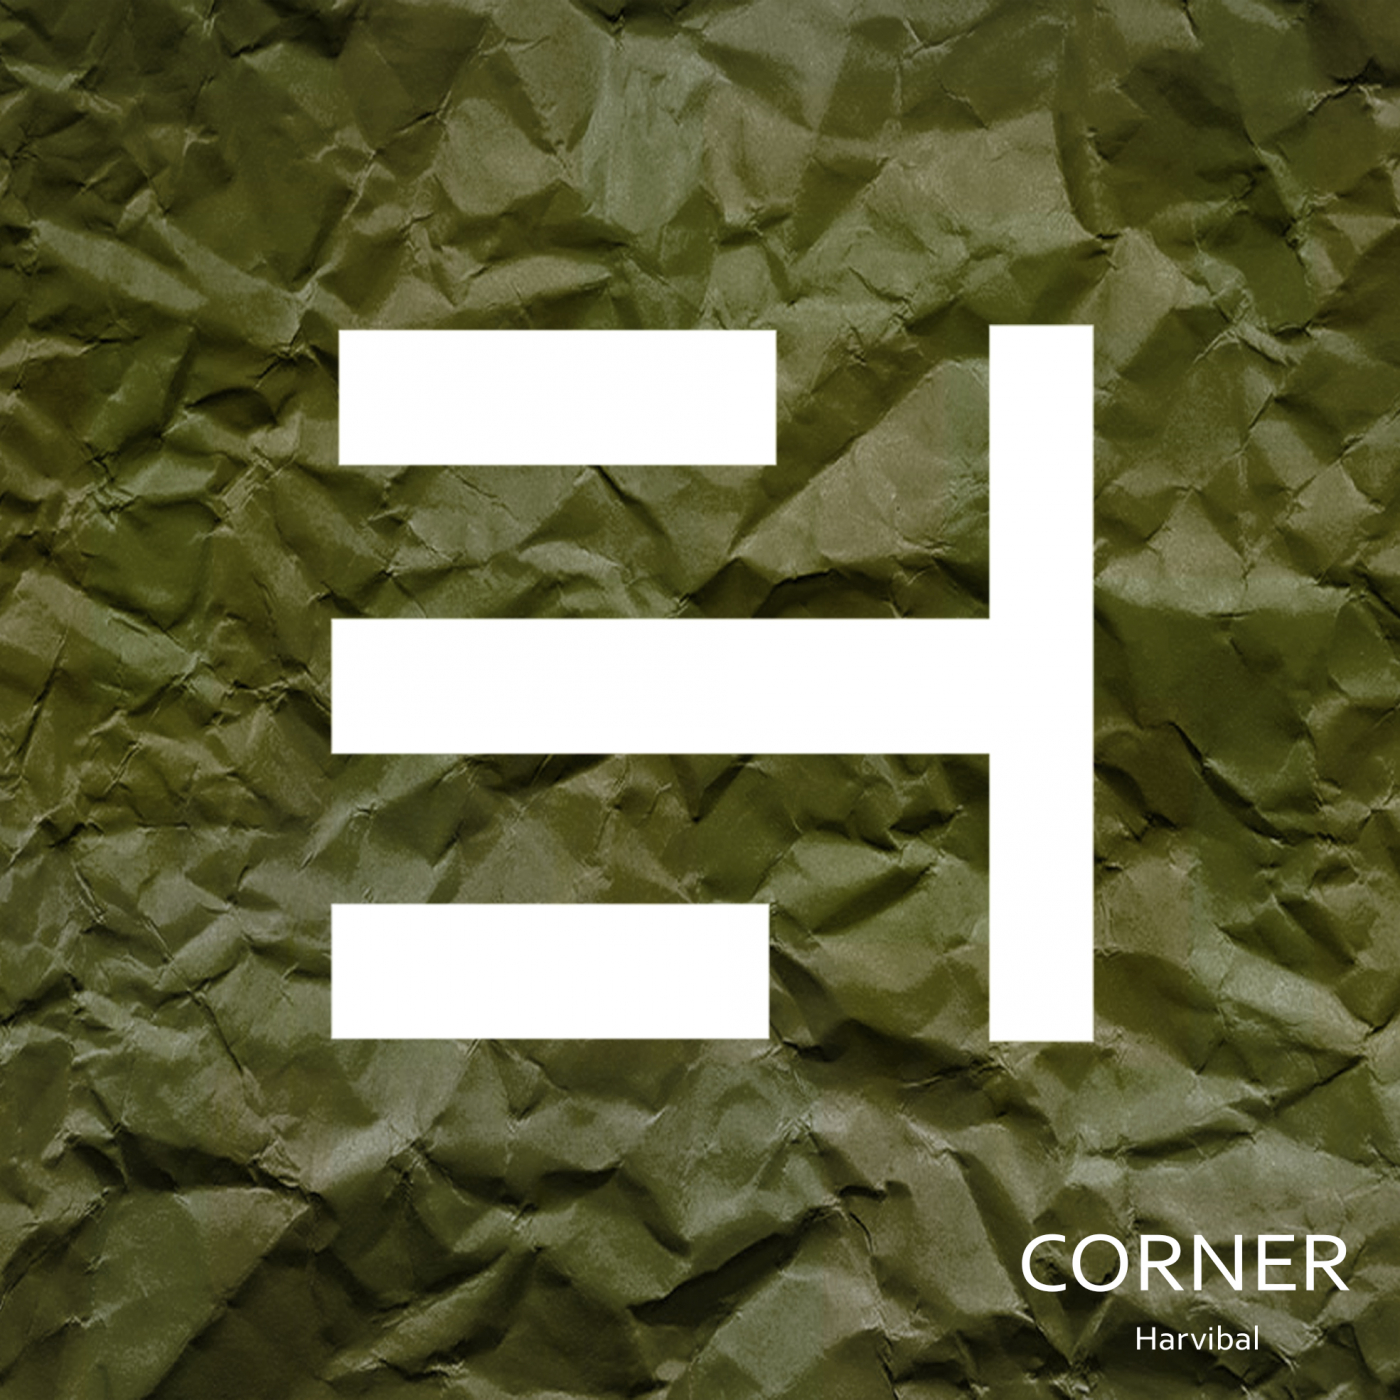 Corner (Original Mix)